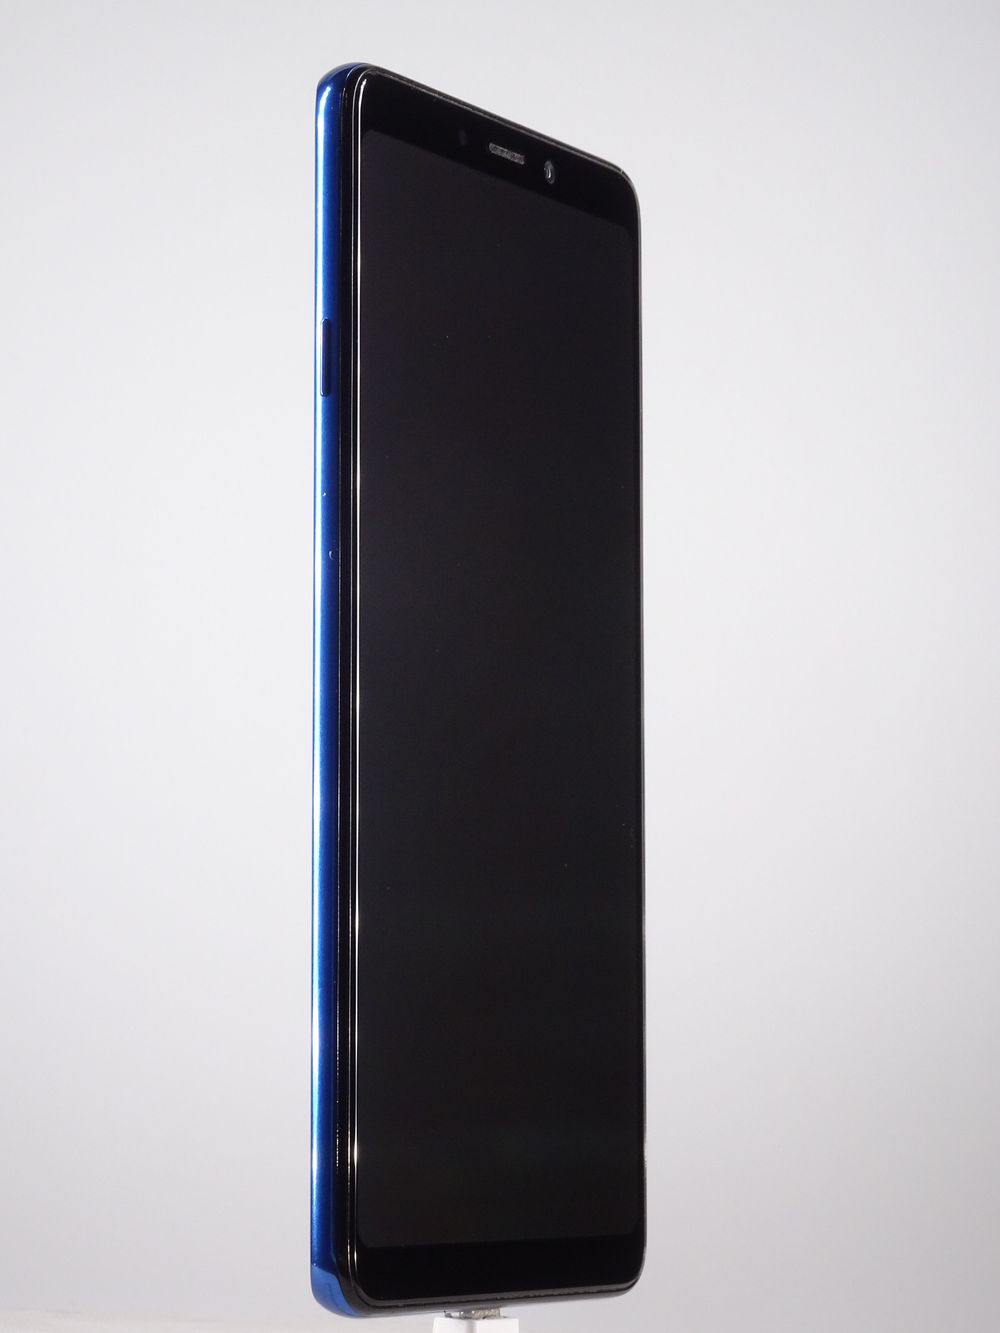 Мобилен телефон Samsung, Galaxy A9 (2018), 128 GB, Blue,  Като нов